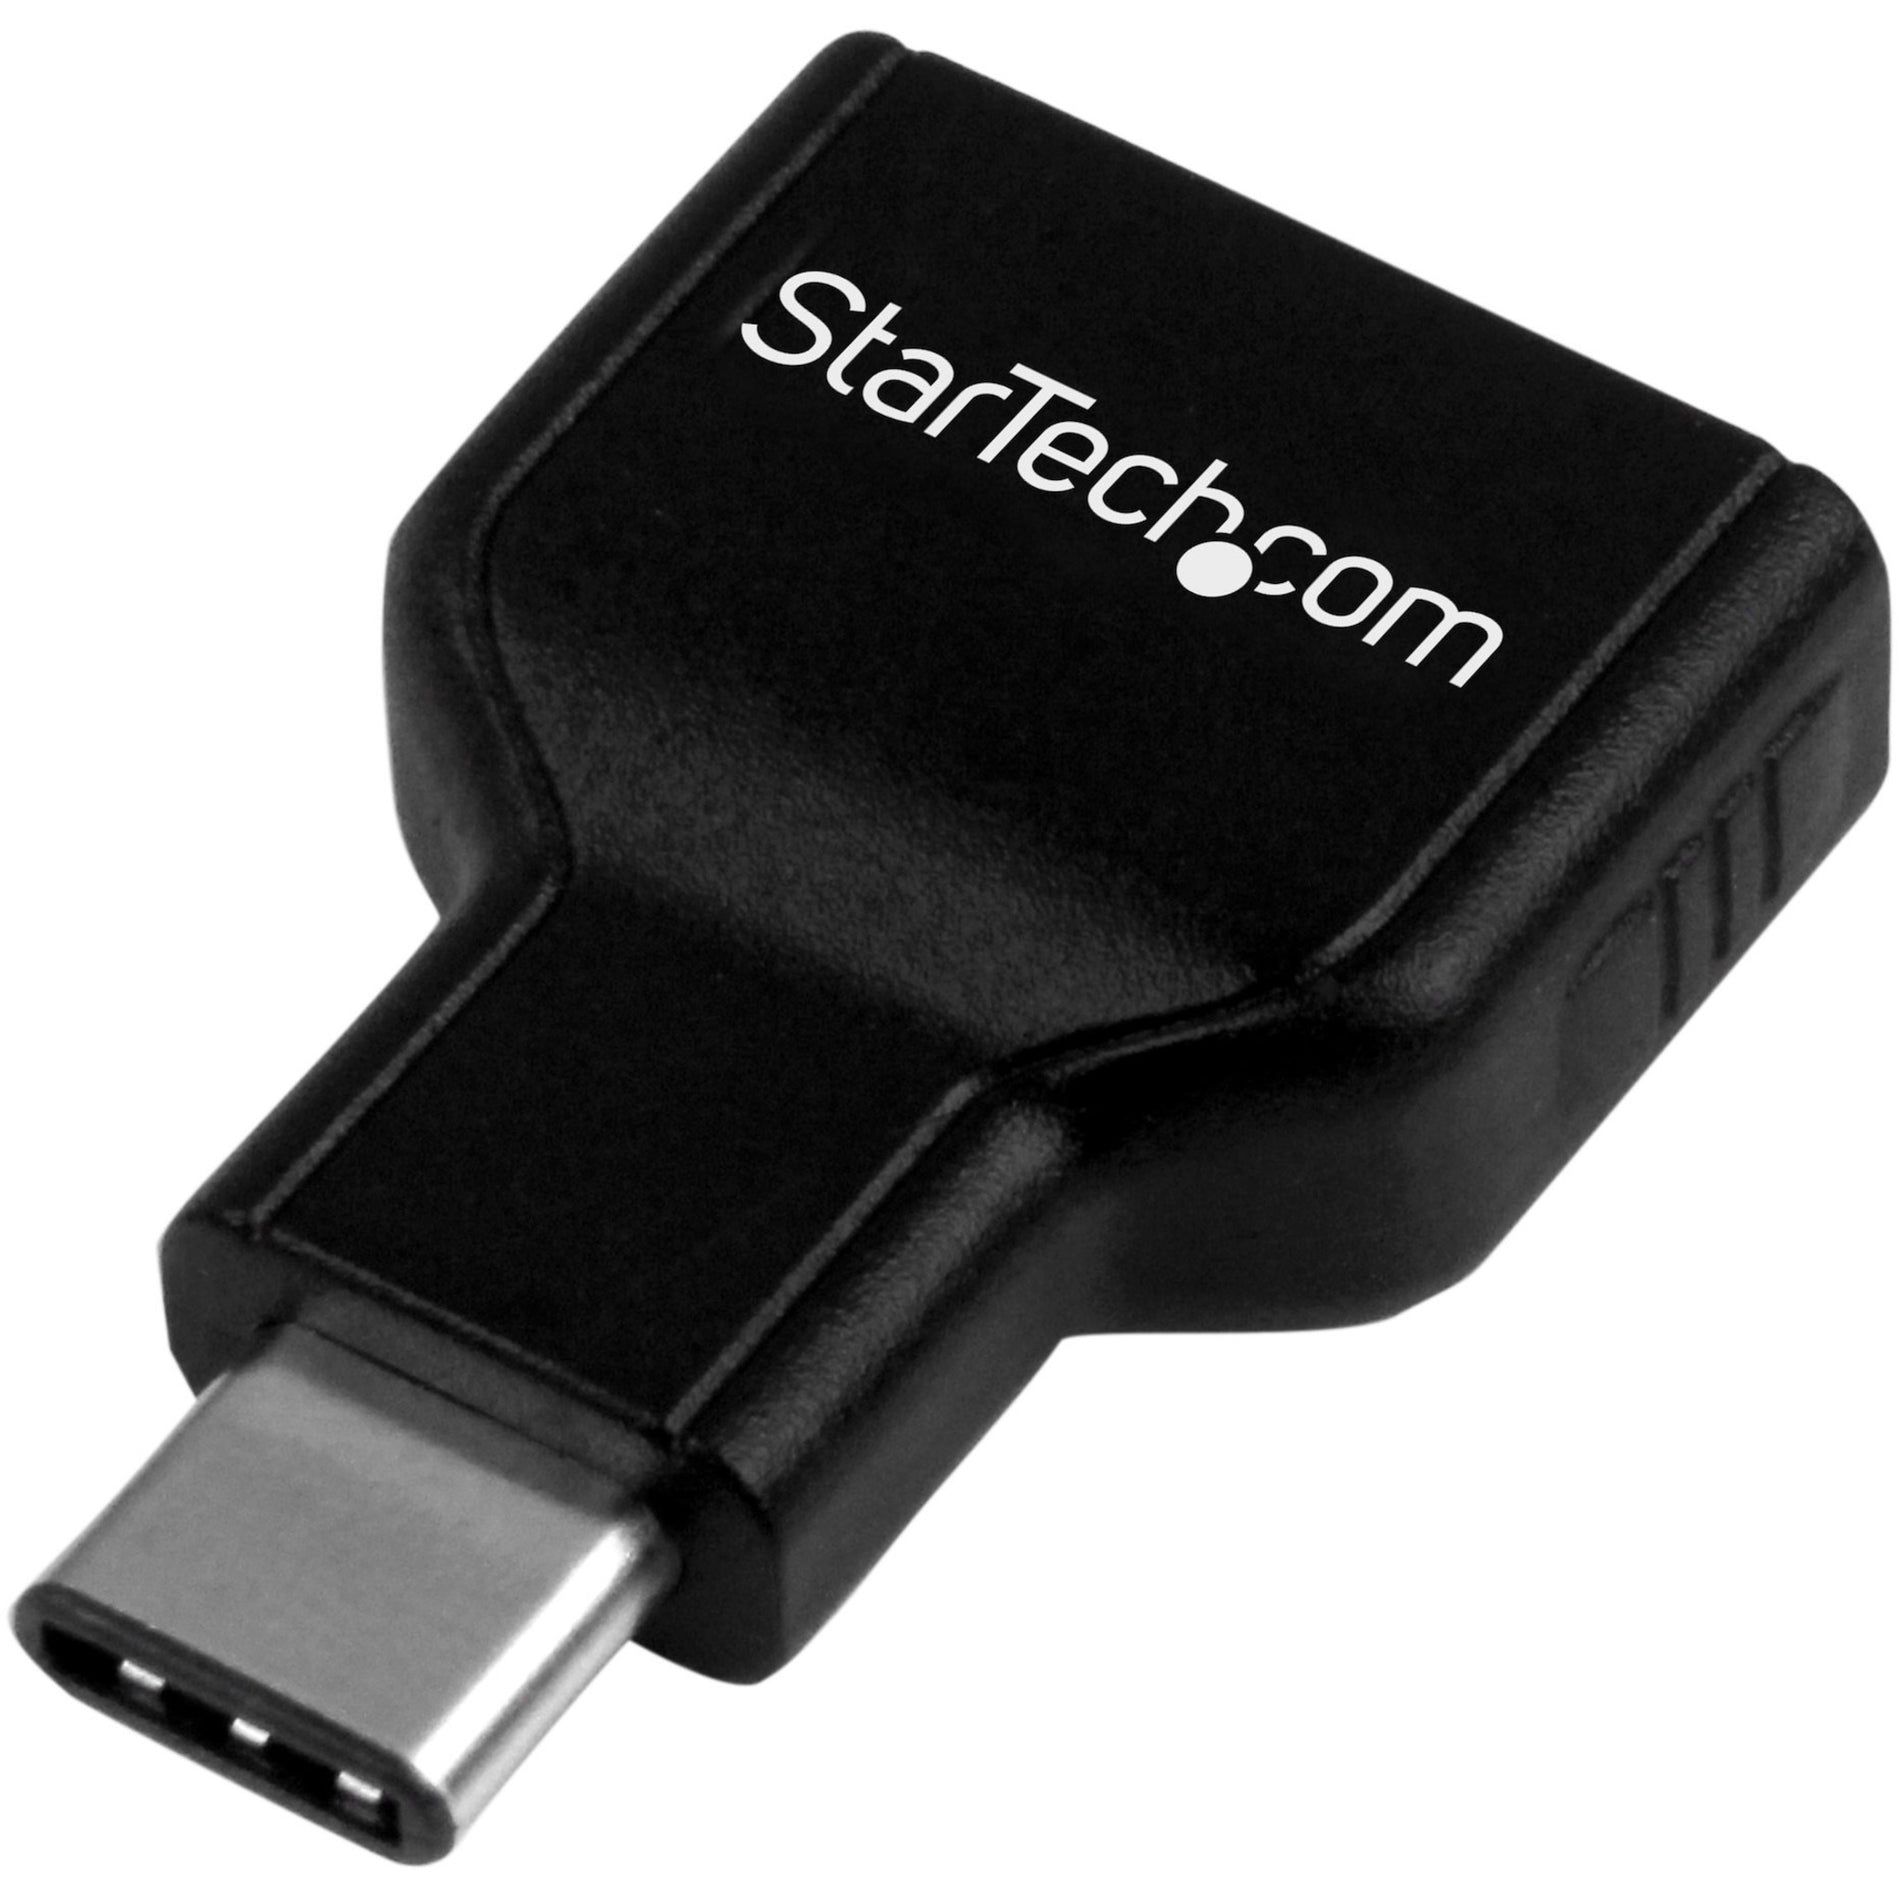 StarTech.com USB31CAADG USB-C to USB-A Adapter M/F - USB 3.0 Verbinding met USB C laptops zoals Apple MacBook Chromebook Pixel en meer